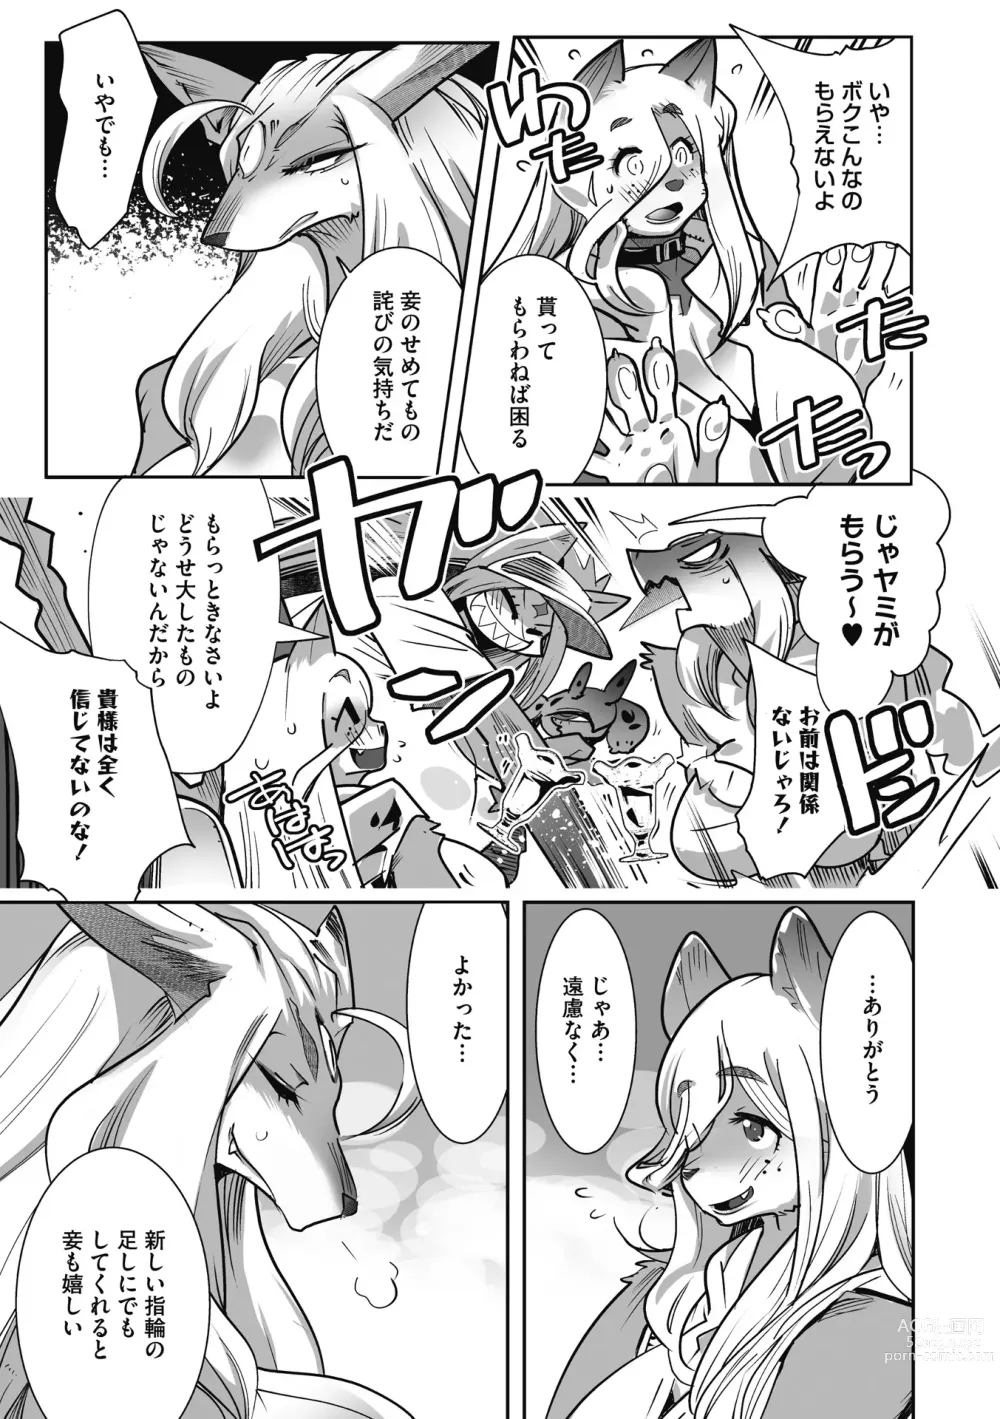 Page 231 of manga Kemono to Koishite Nani ga Warui!